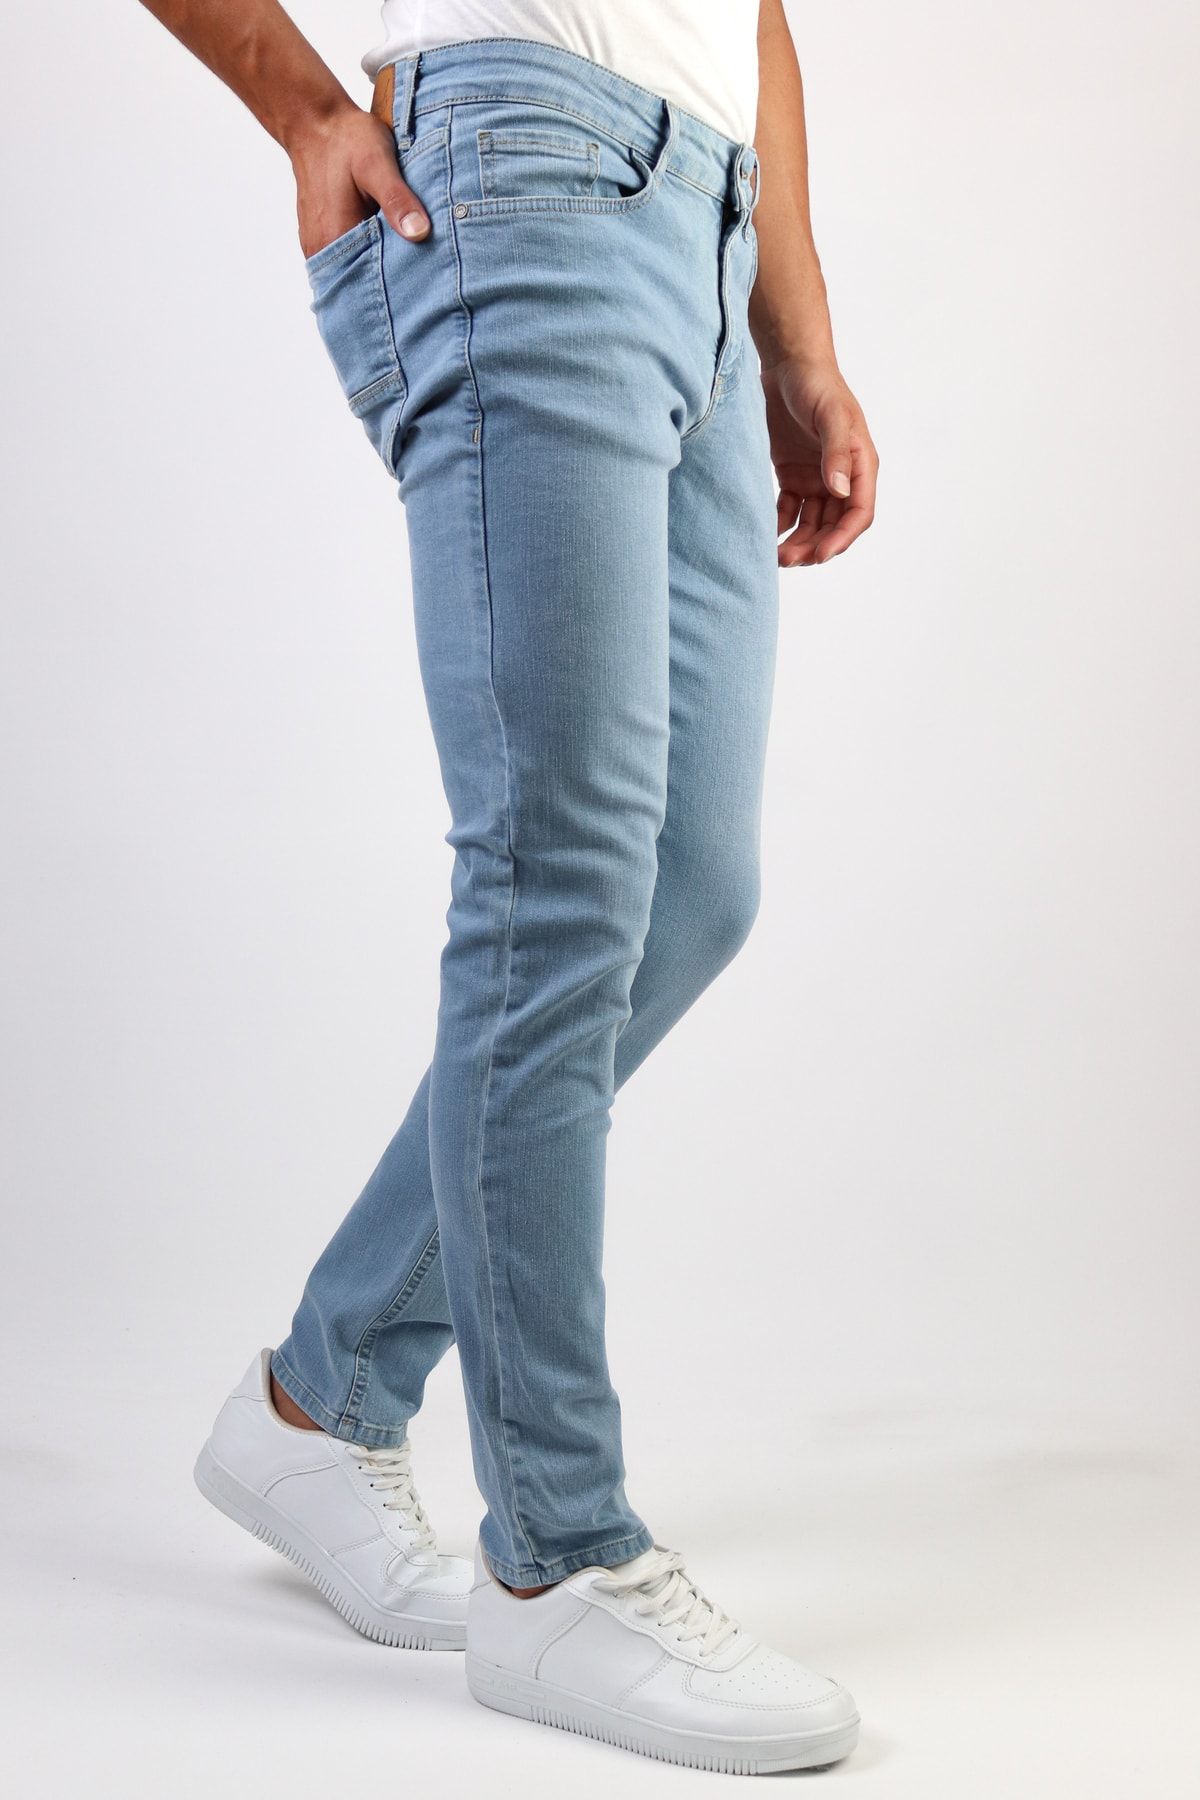 Men's Regular Fit Most Comfortable Grey Color Lycra Jeans - Treyond World